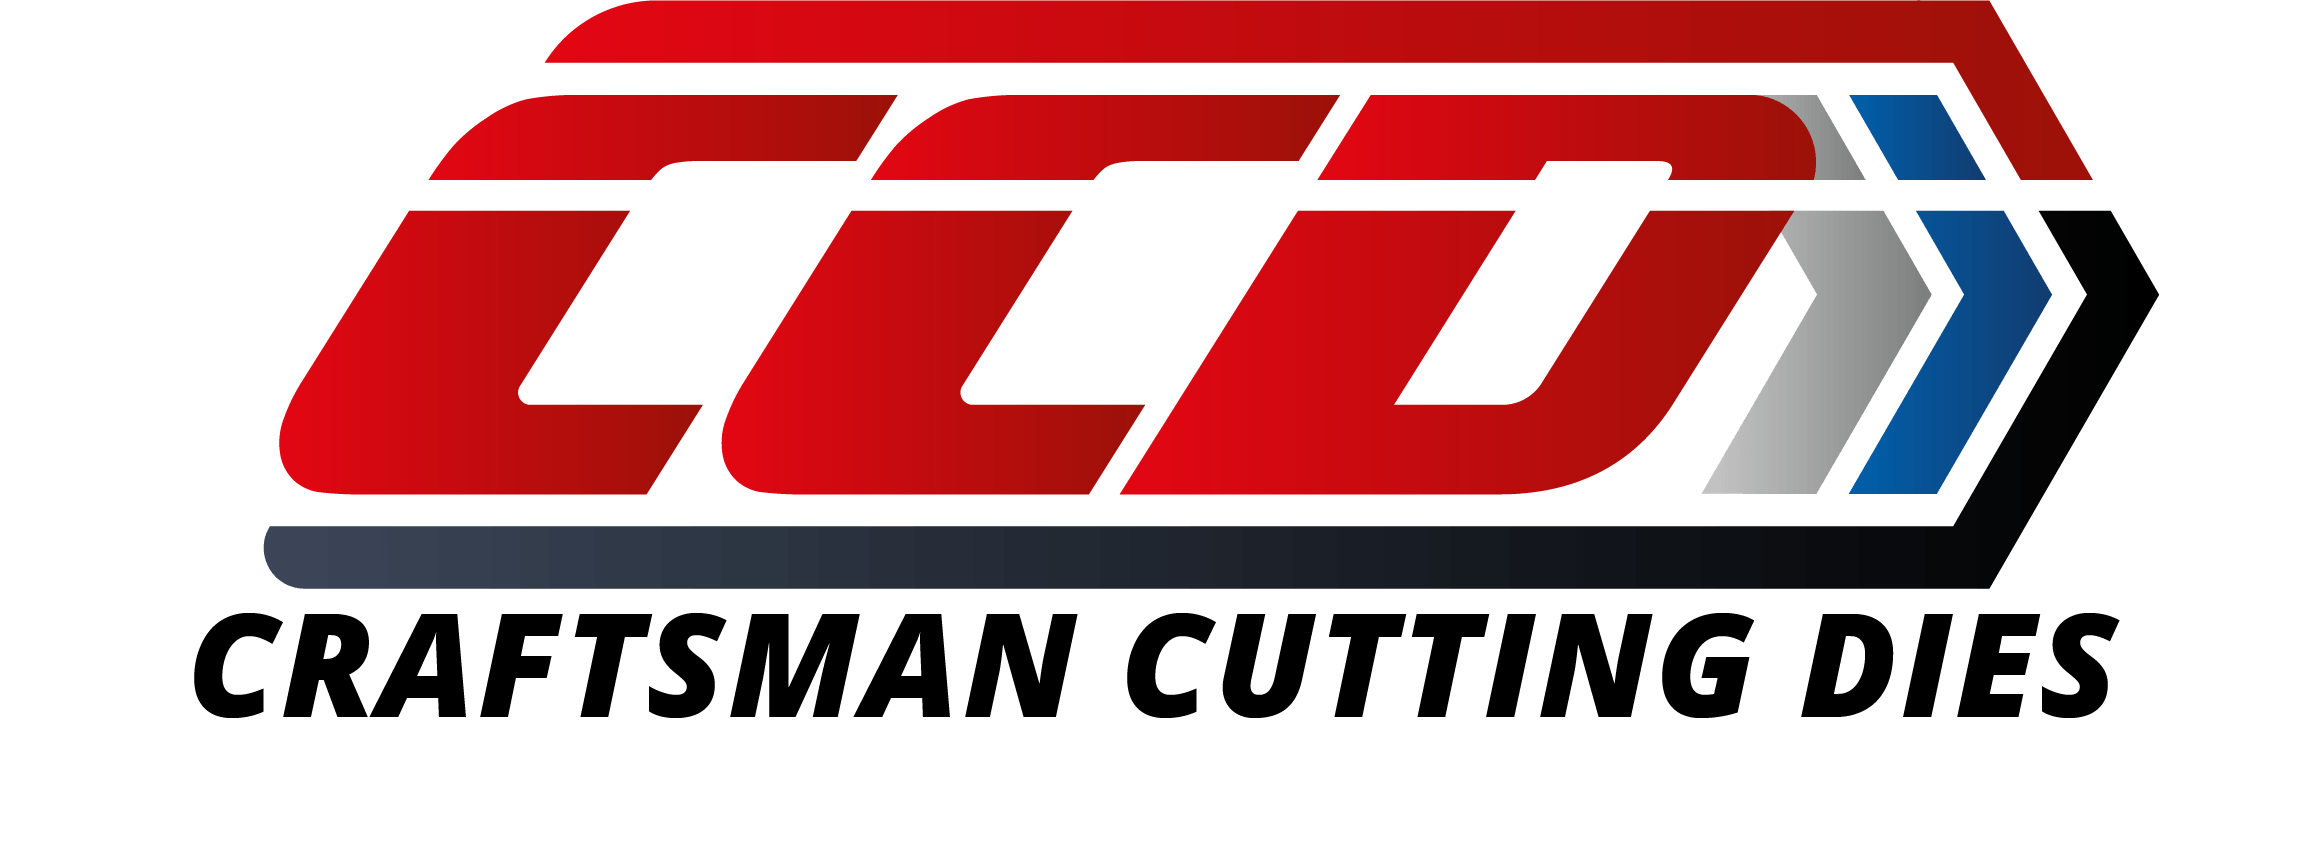 Craftsman Cutting Dies